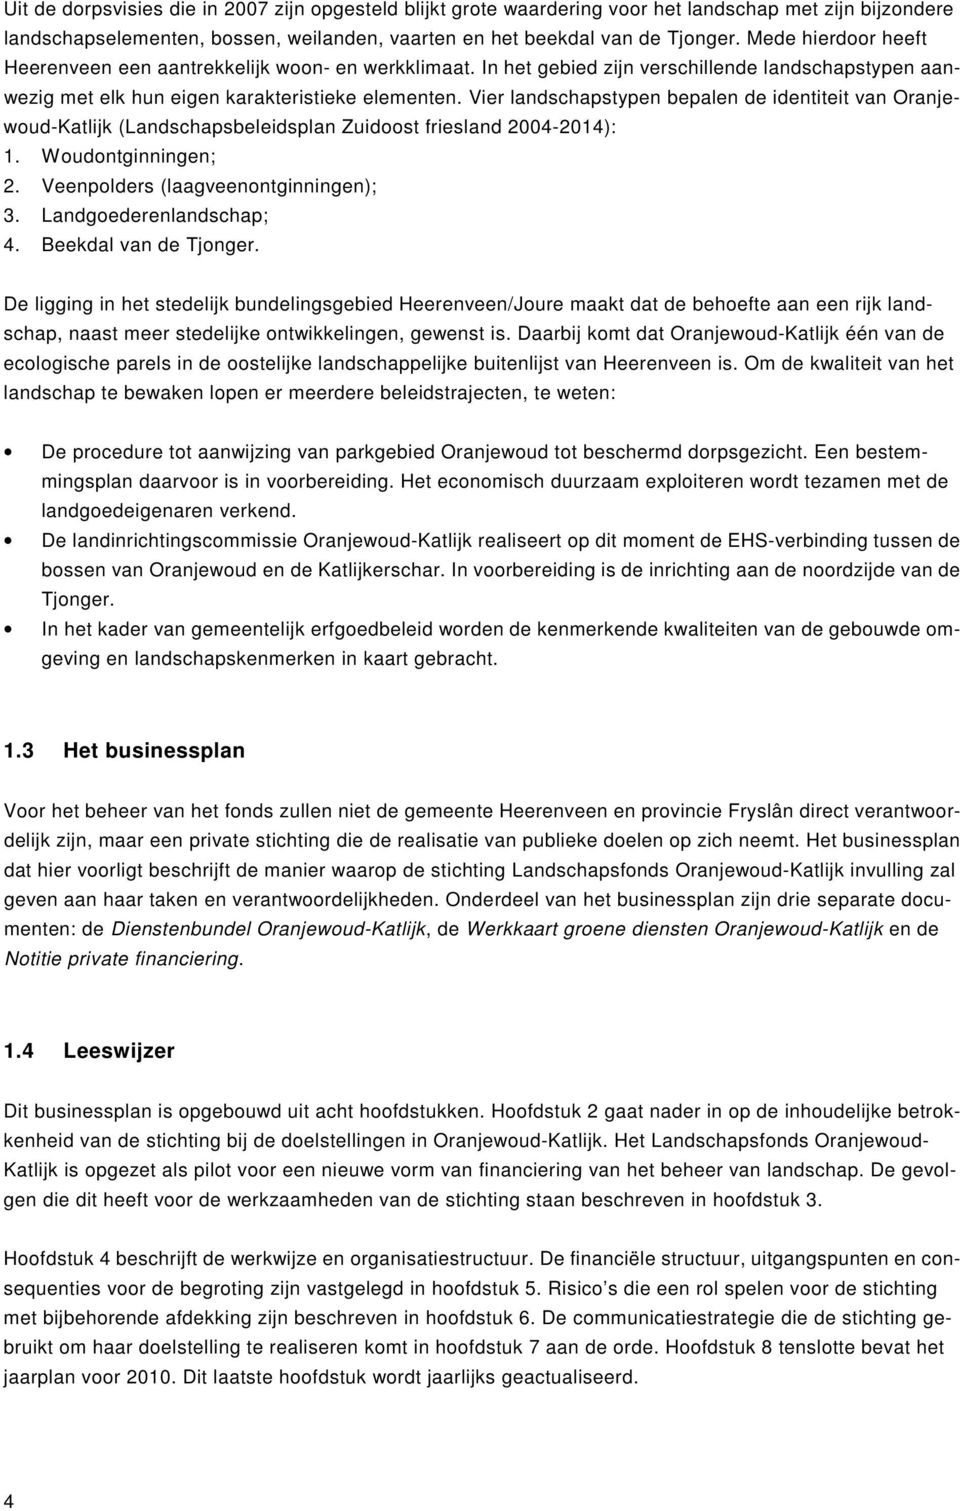 Vier landschapstypen bepalen de identiteit van Oranjewoud-Katlijk (Landschapsbeleidsplan Zuidoost friesland 2004-2014): 1. Woudontginningen; 2. Veenpolders (laagveenontginningen); 3.